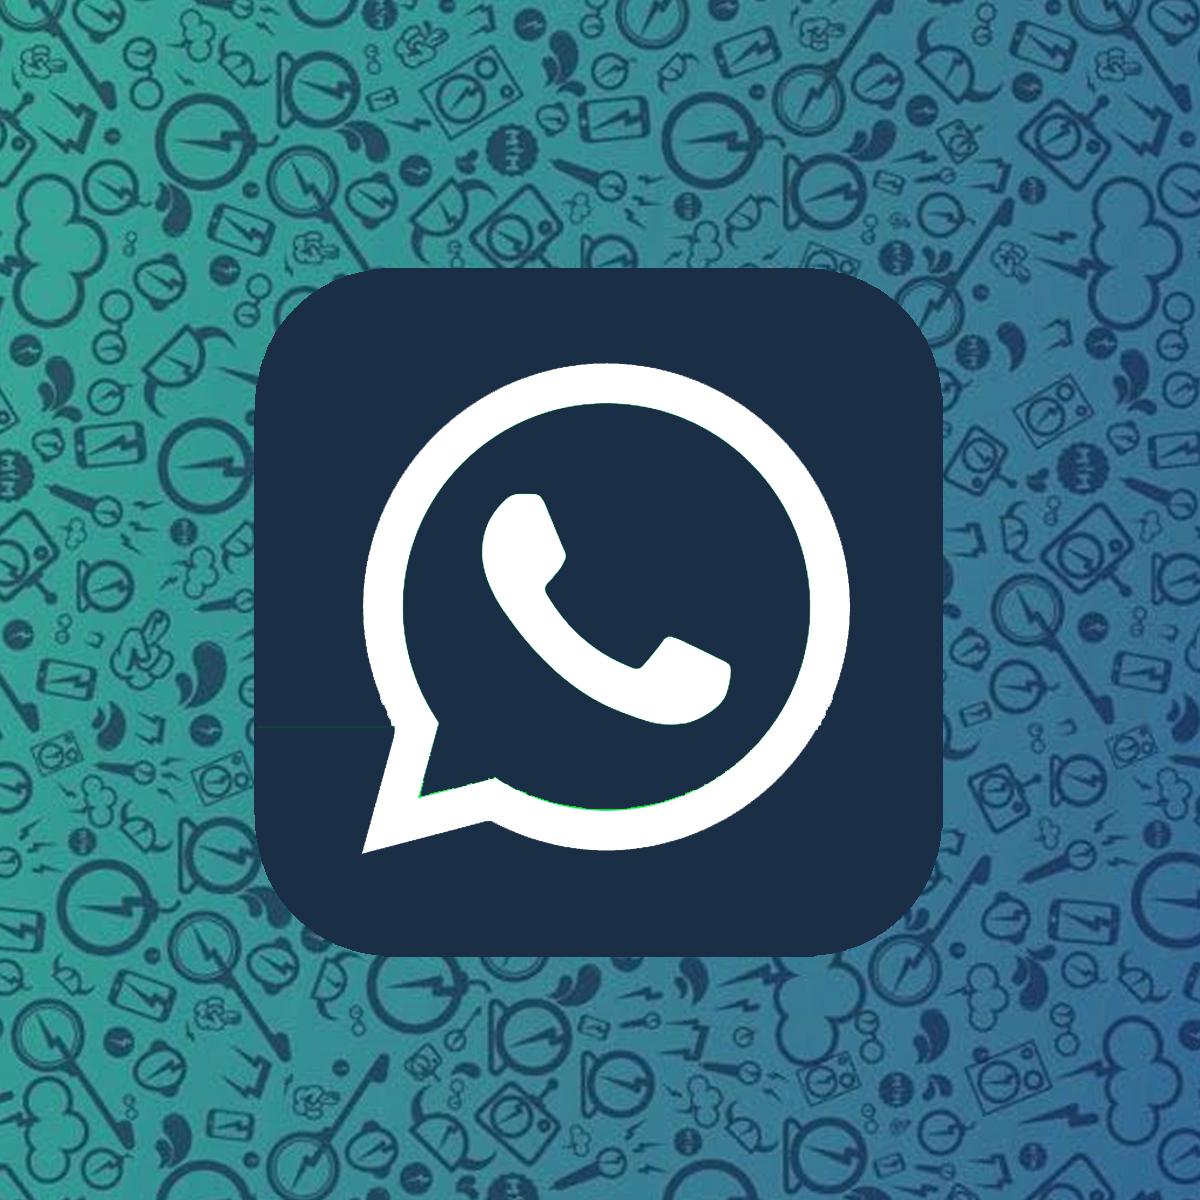 WhatsApp Plus APK Descargar v17.70 Versión más Reciente (Oficial)